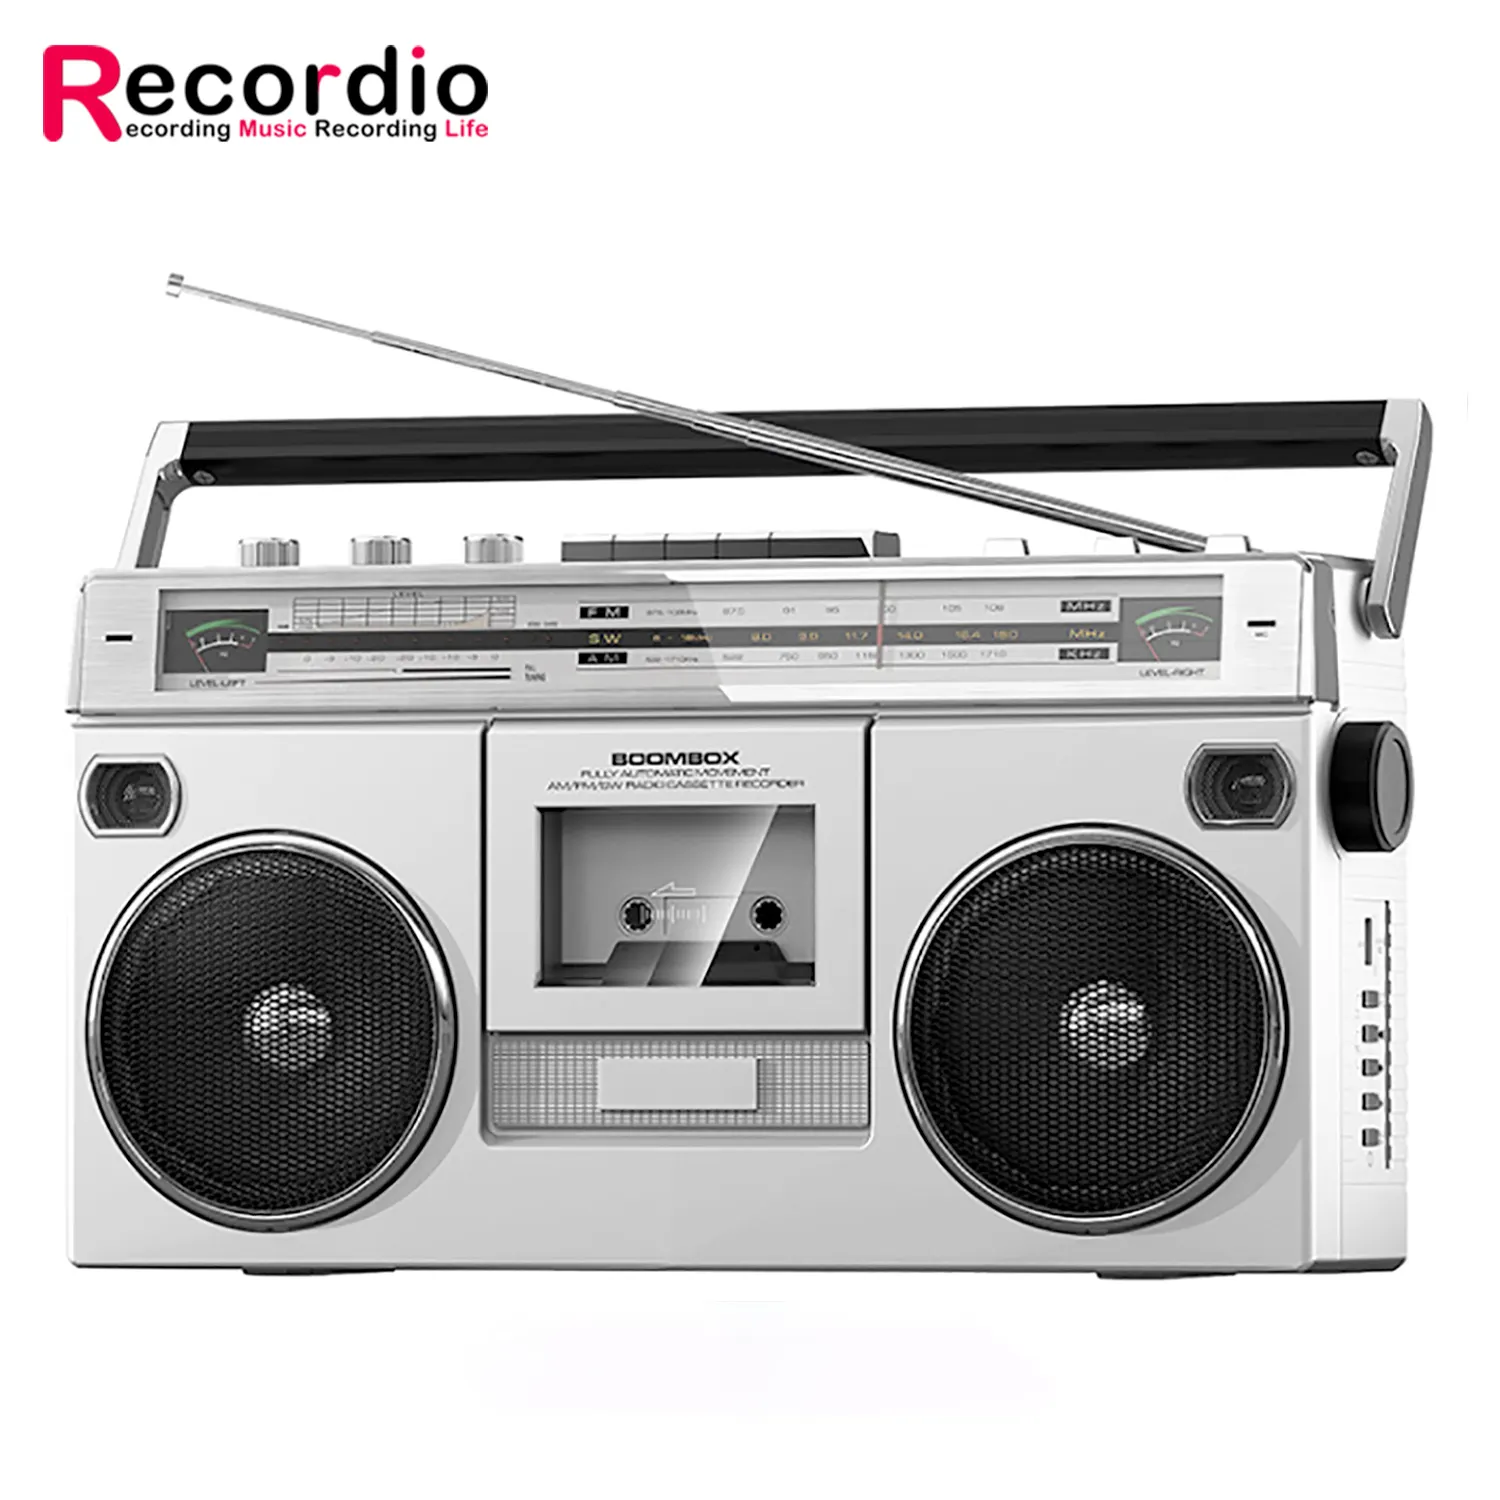 GAS-RD80 классический магнитофон старомодный Ностальгический 80s ретро стерео кассетный магнитофон радио для прослушивания музыки